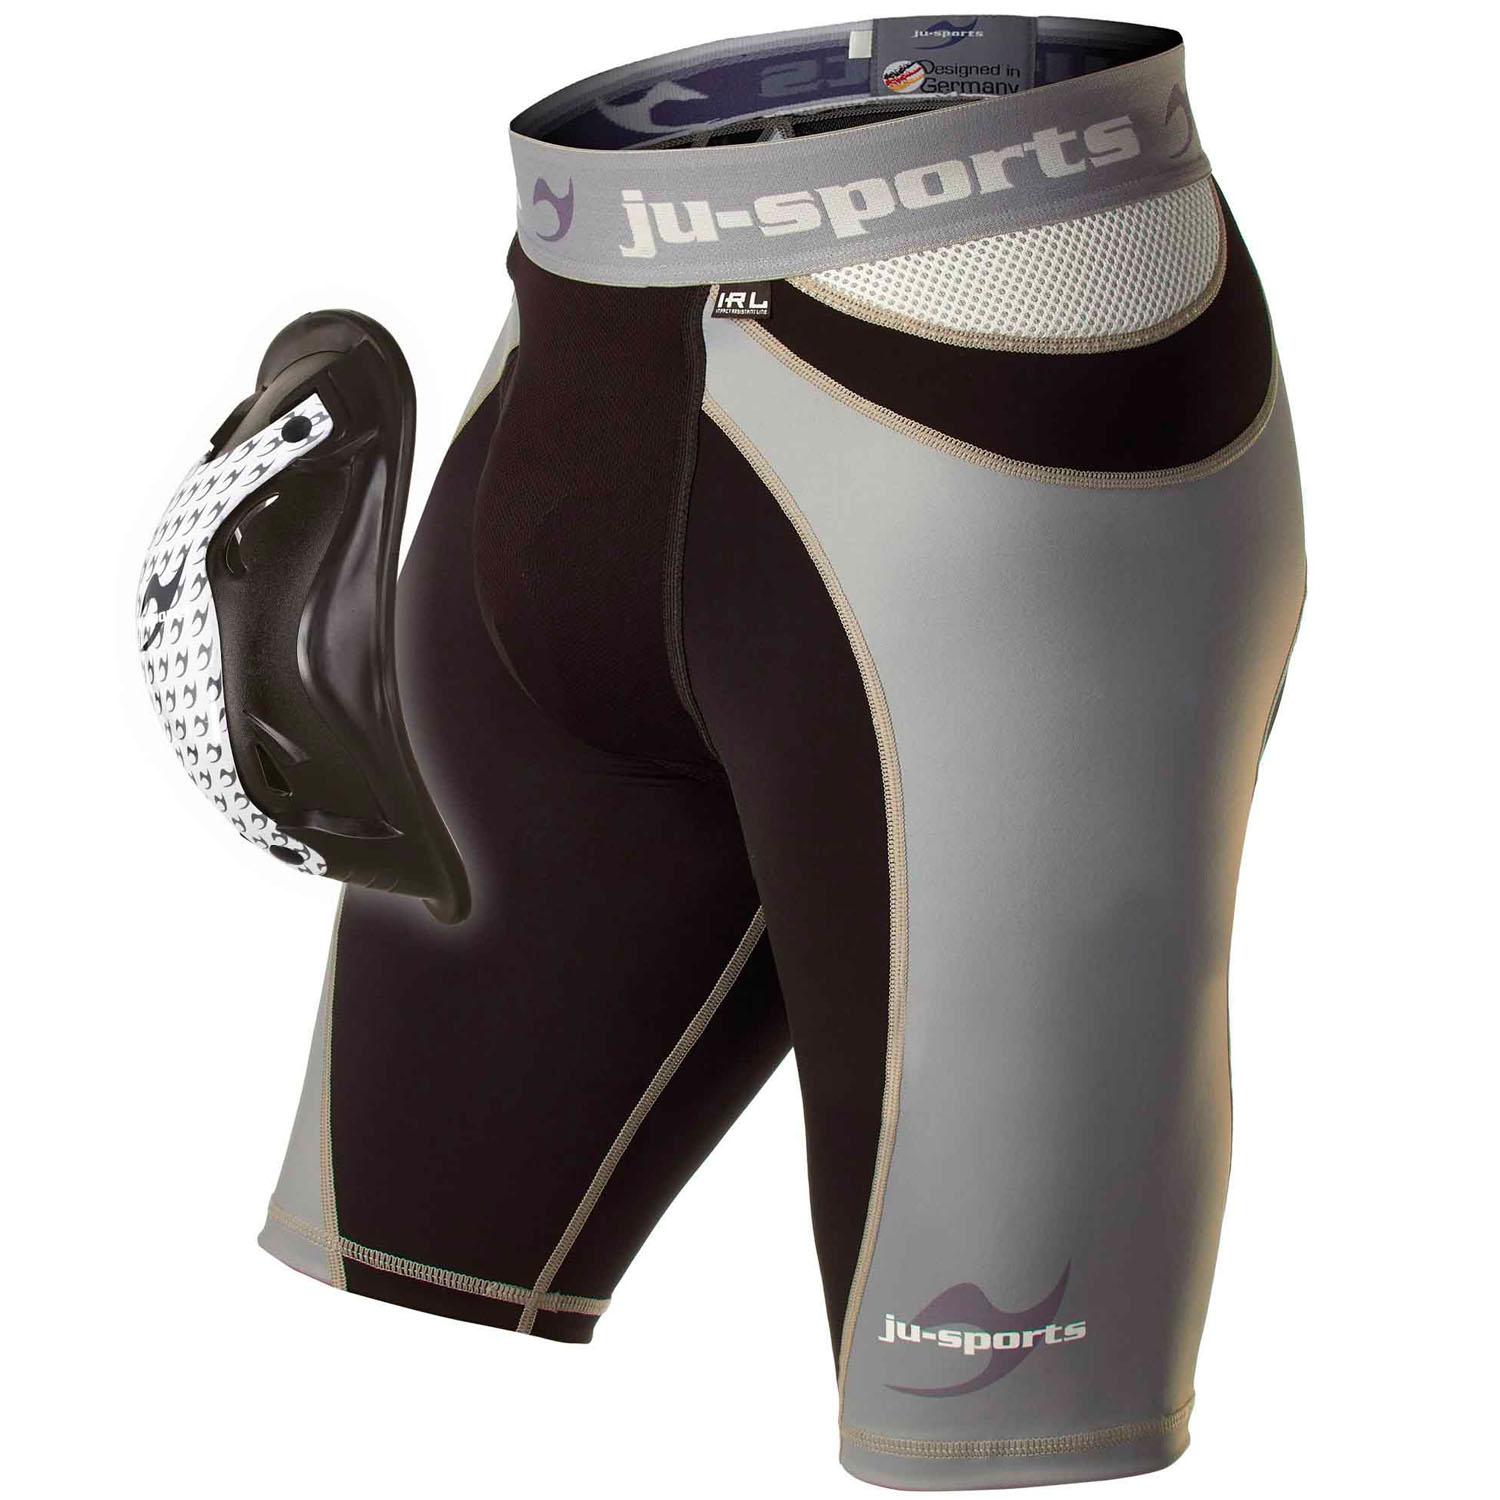 Ju-Sports Compression Shorts, Pro Line Motion Pro Flexcup S, S